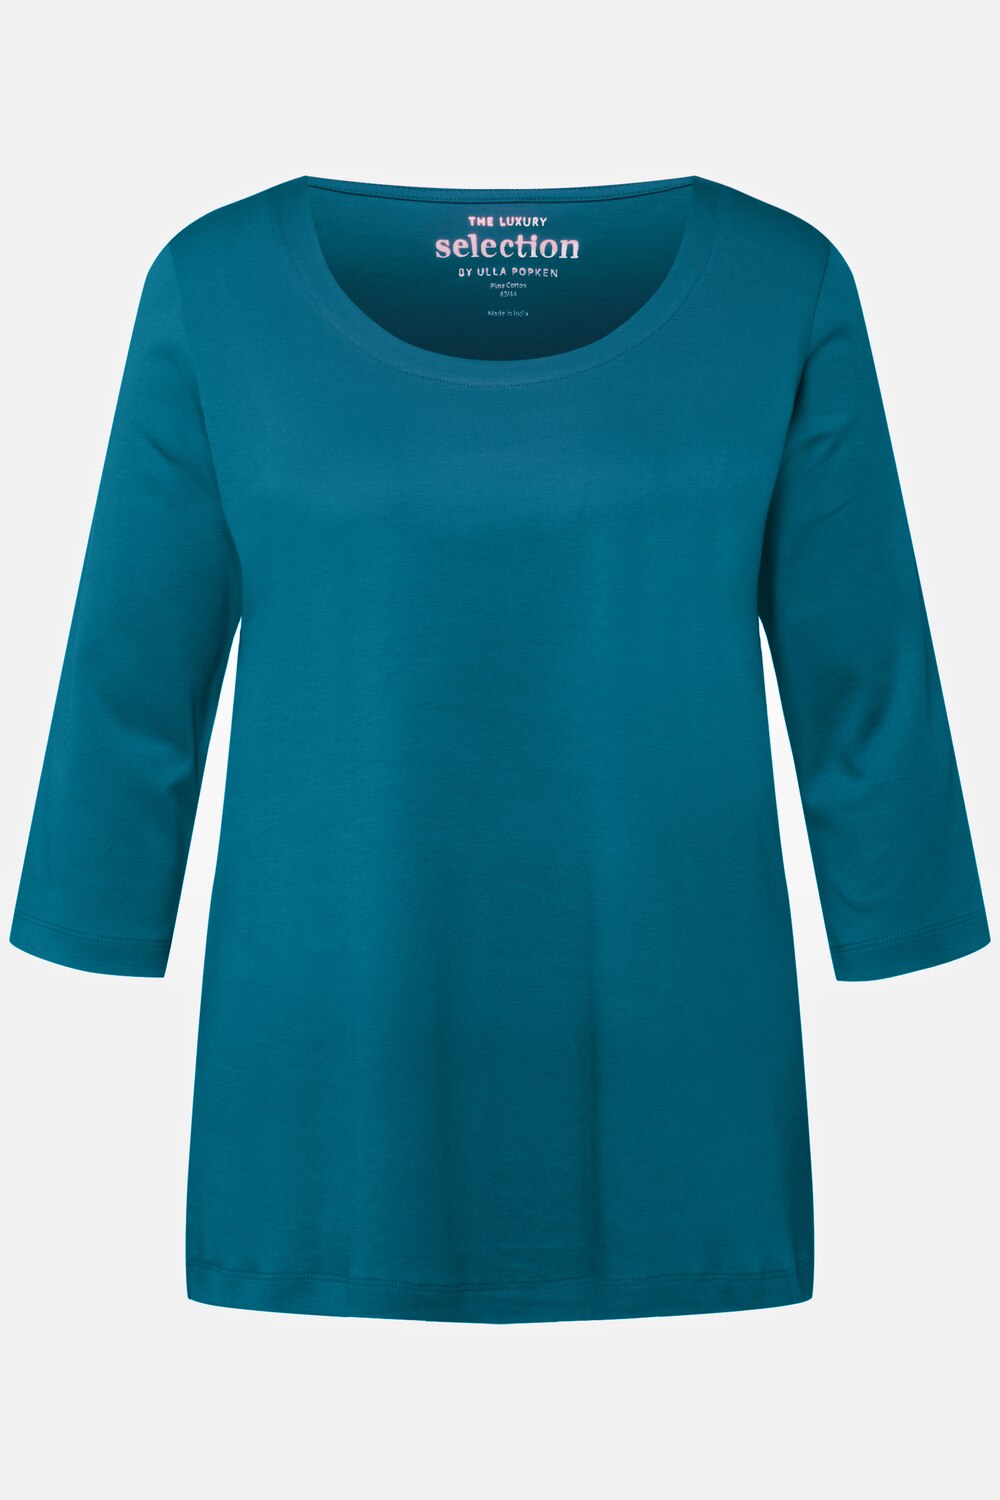 Grote Maten T-shirt, Dames, turquoise, Maat: 50/52, Katoen, Ulla Popken